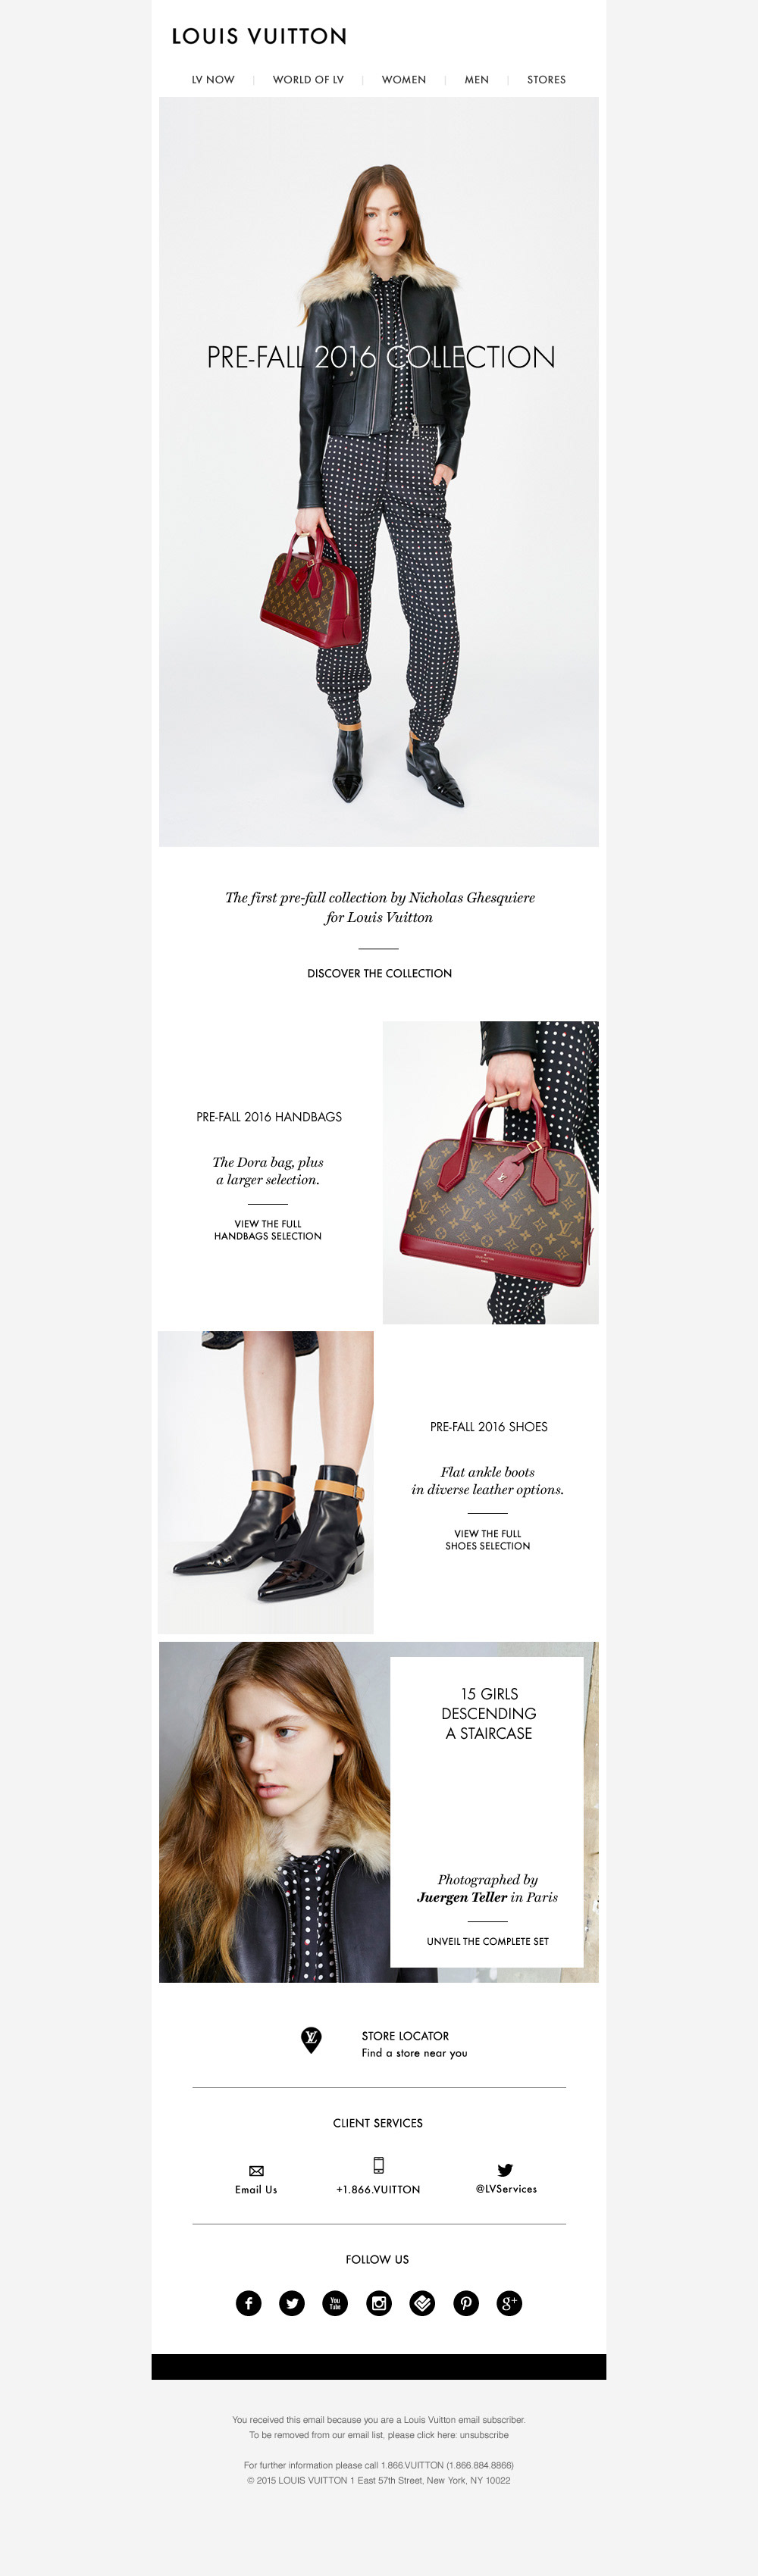 Newsletter Vuitton